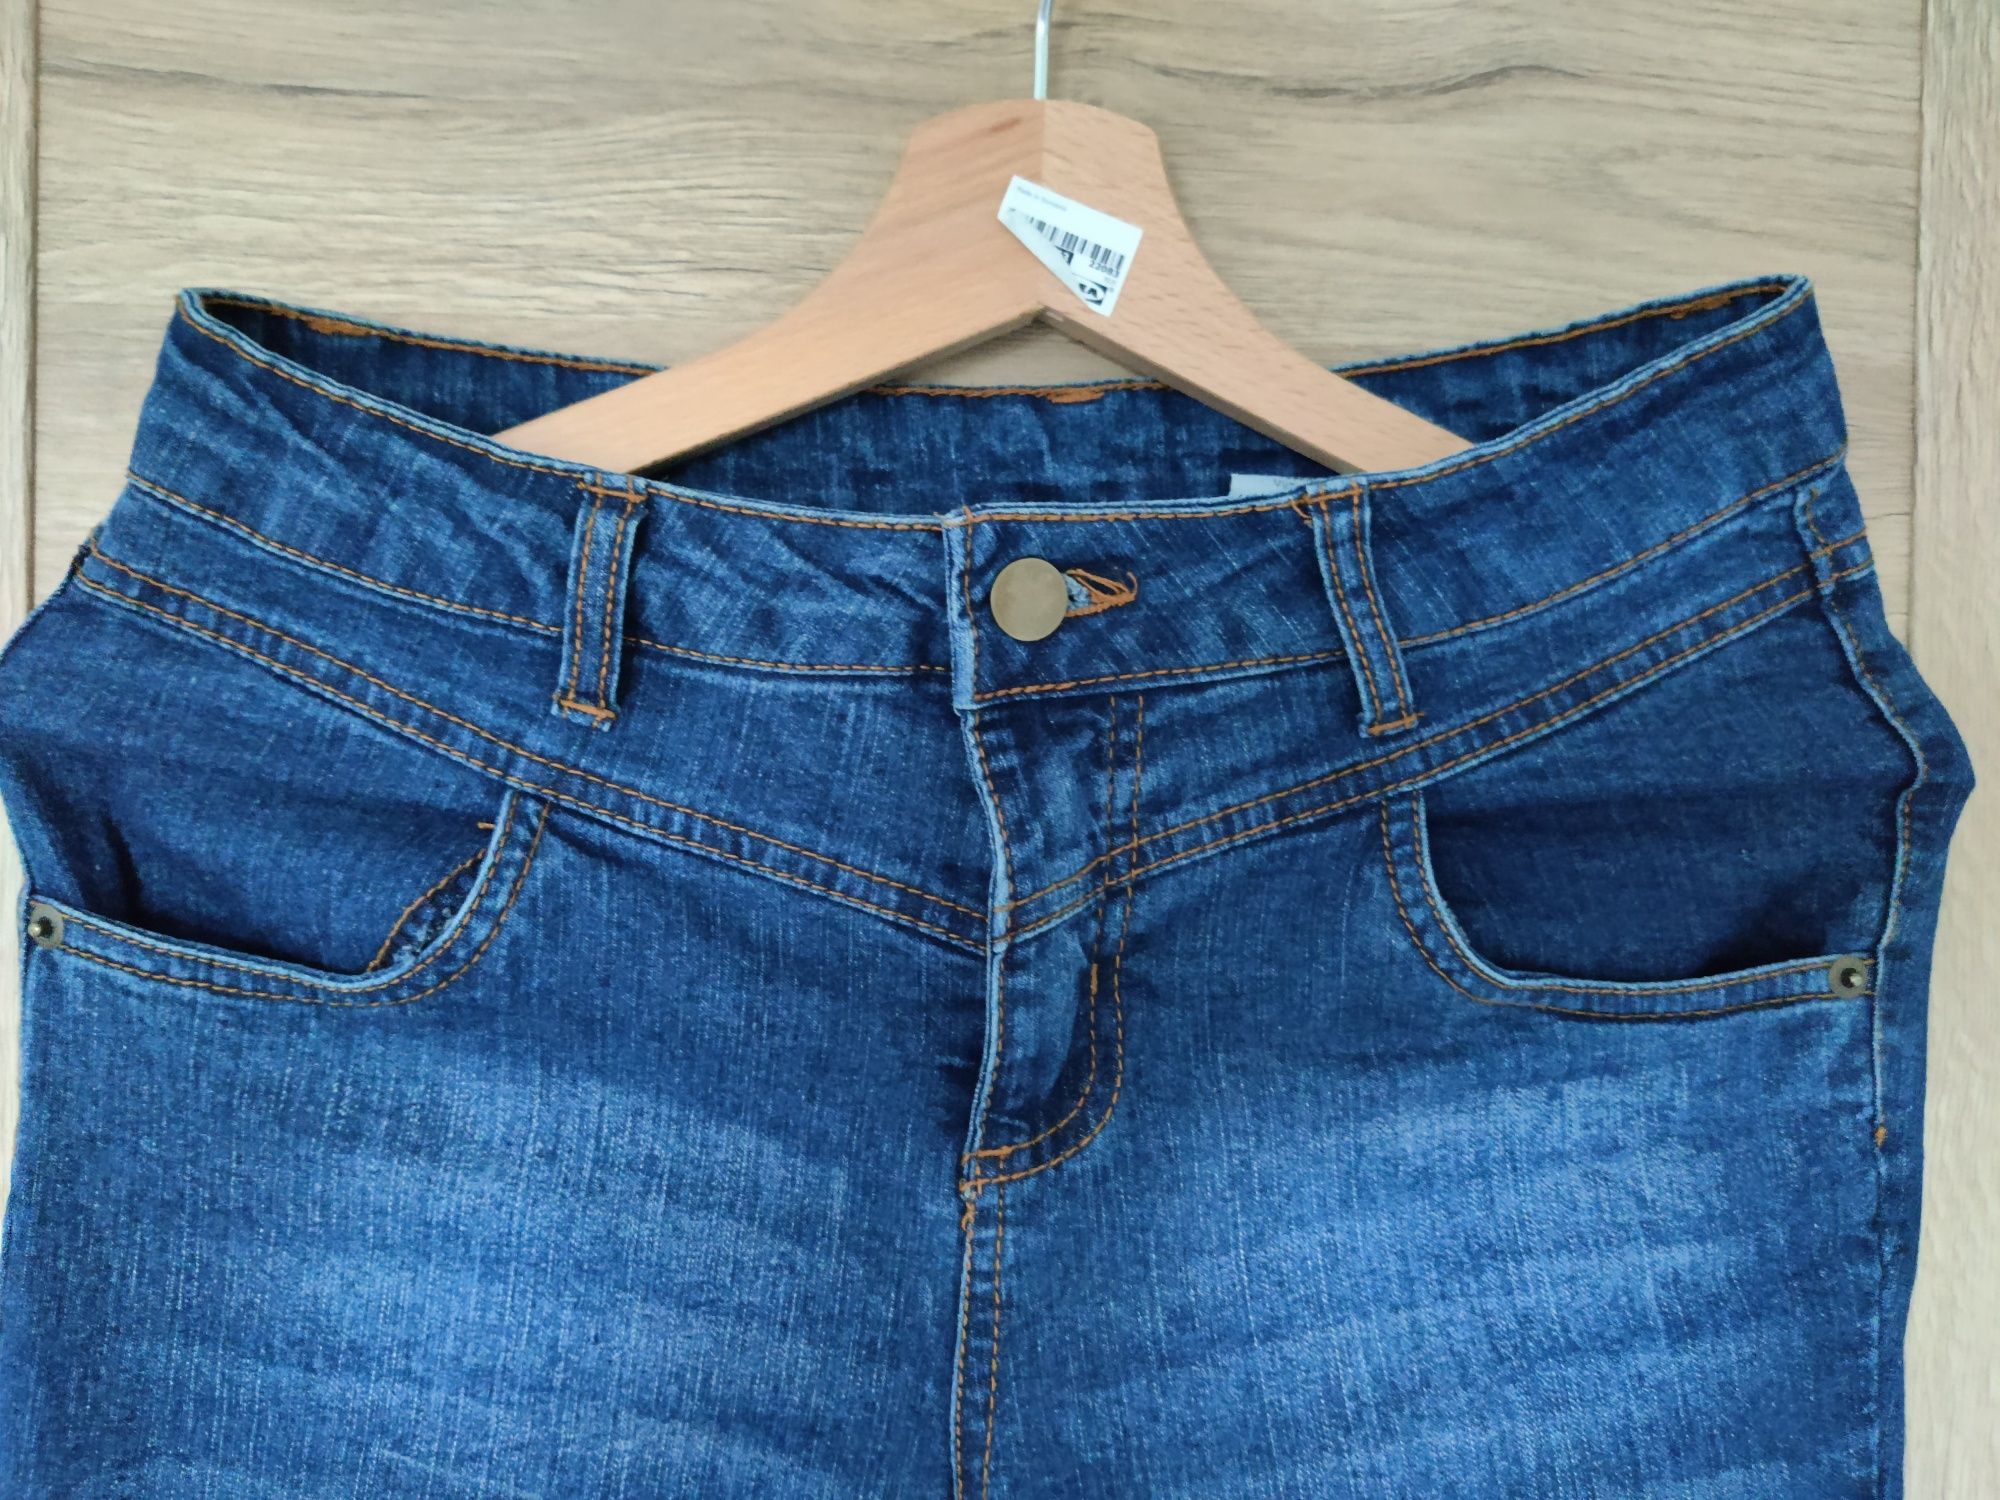 Zestaw damskie spodnie S 5 szt. paka damskie ciuchy jeansy, spodnie